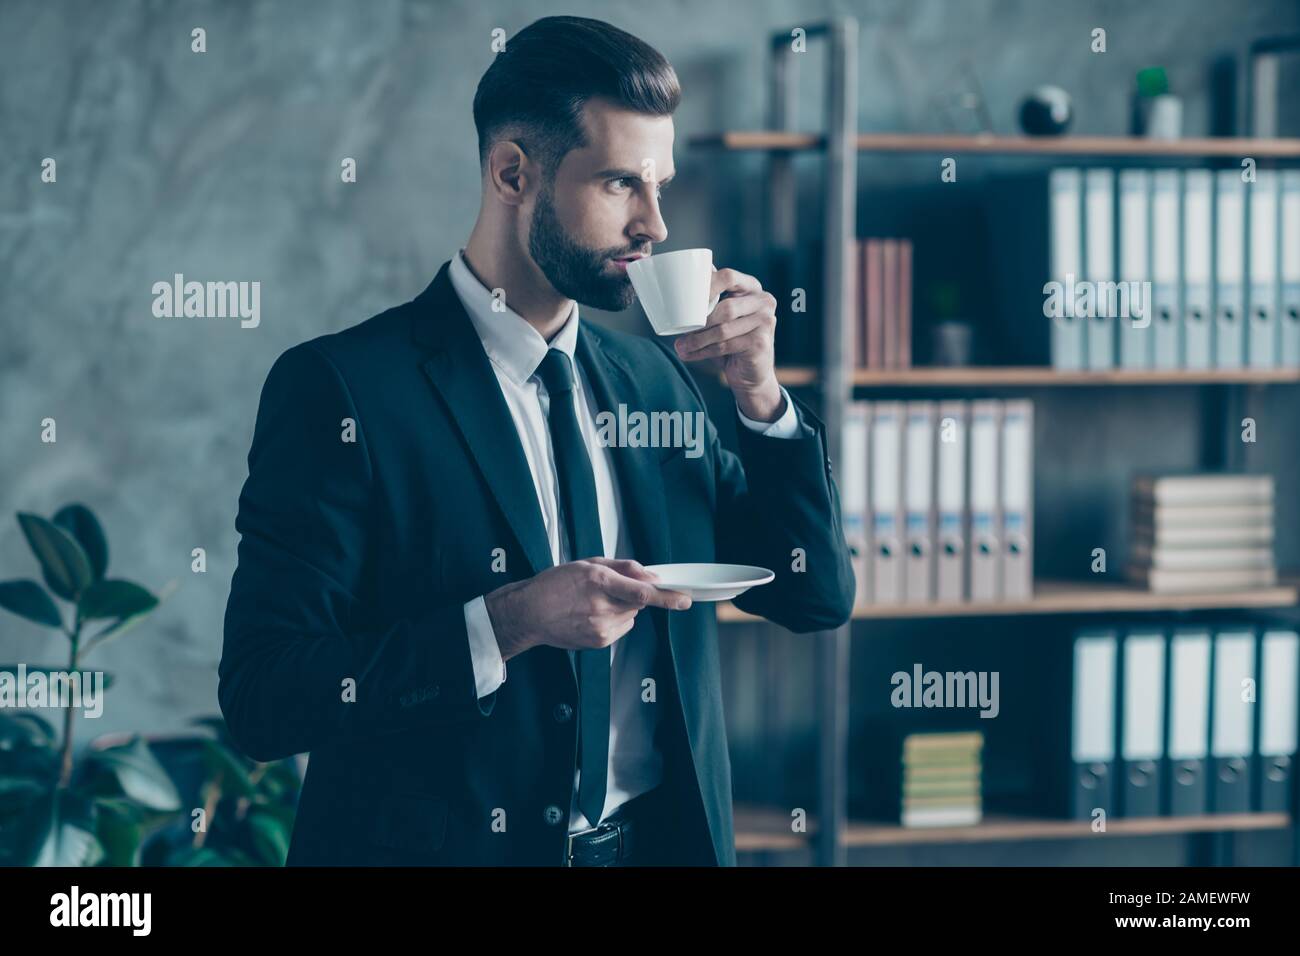 Foto de de un hombre de negocios de éxito con confianza para sí mismo mantener café bebida mirar ventana ropa de cuidado negro blazer camisa corbata traje Fotografía de